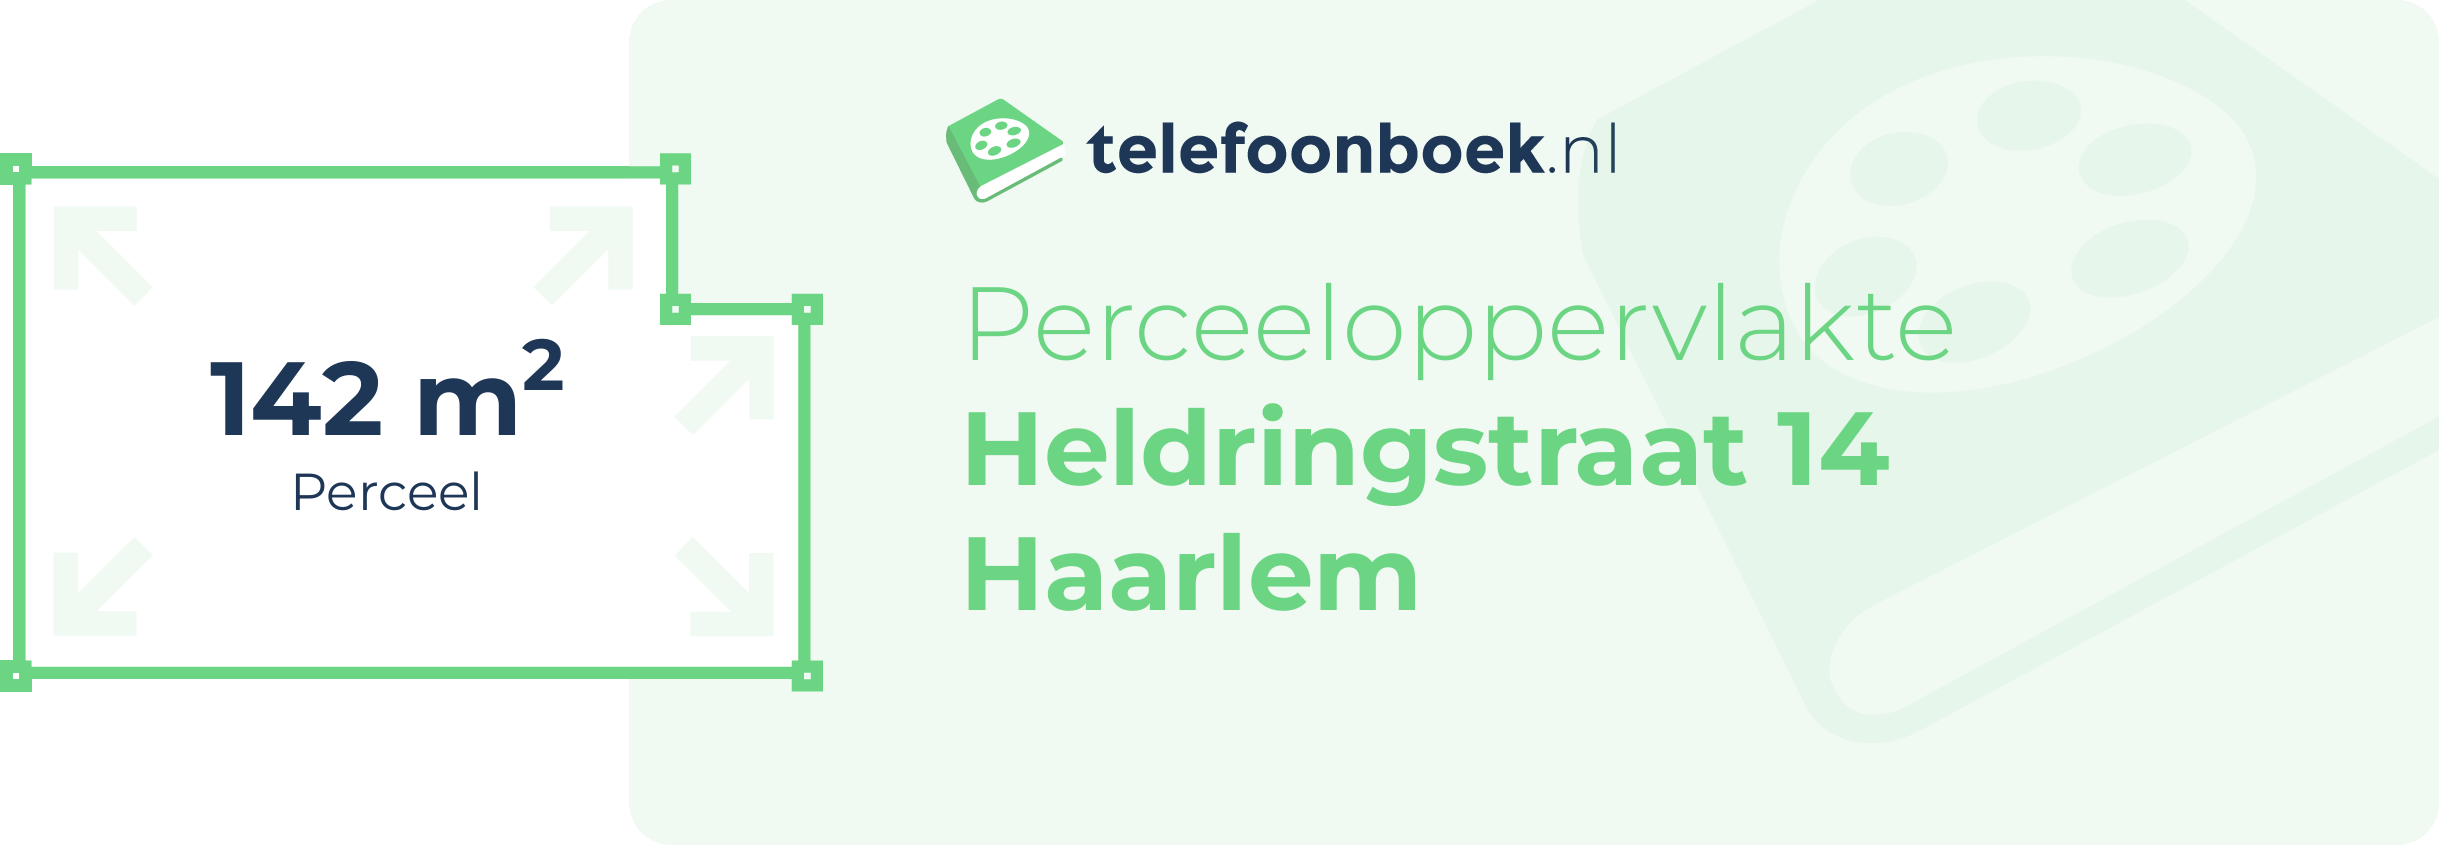 Perceeloppervlakte Heldringstraat 14 Haarlem